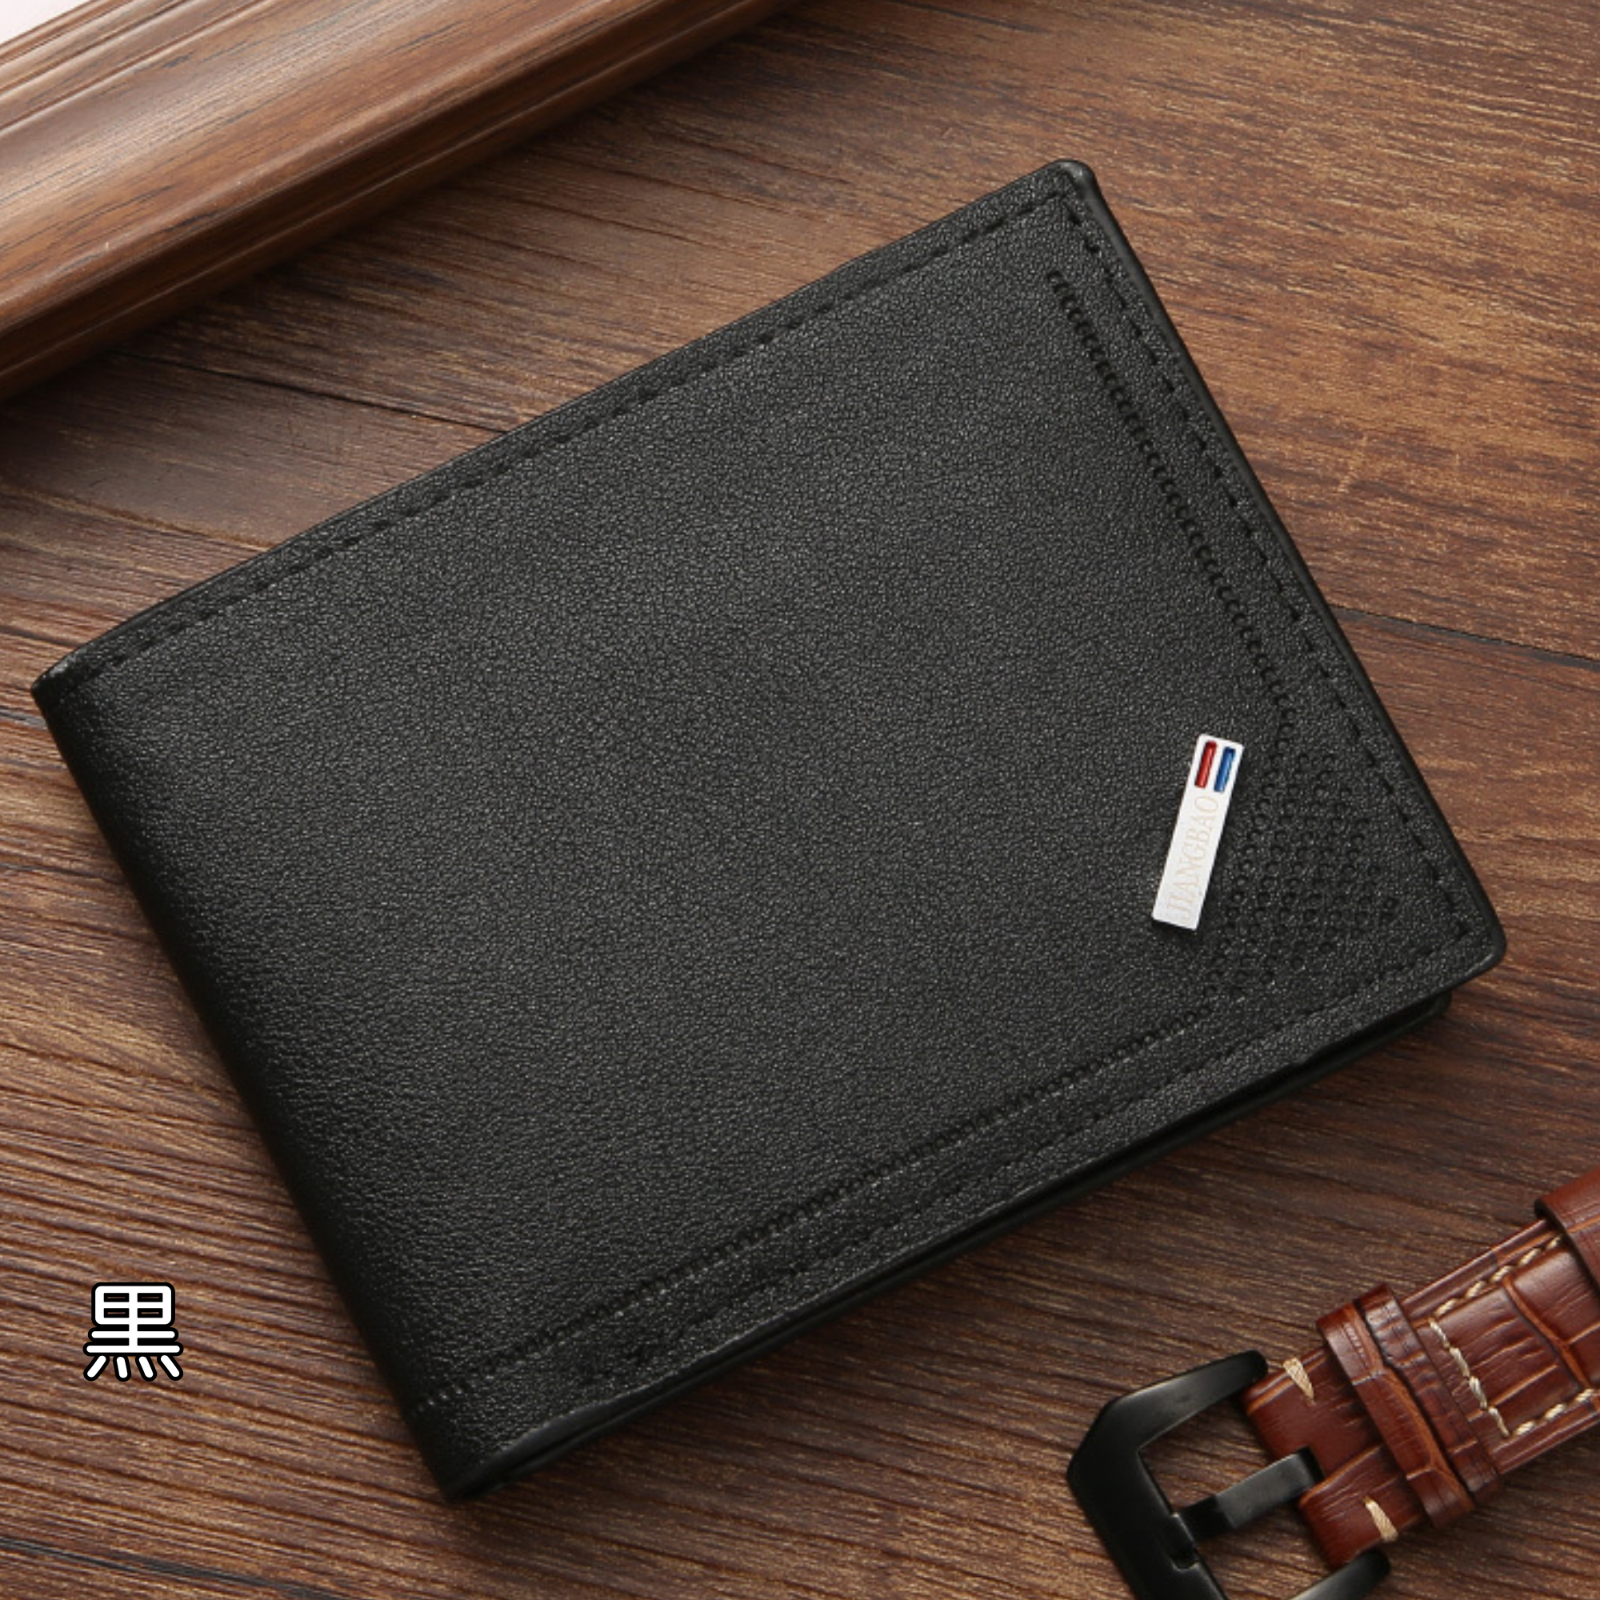 レザー製 折り畳み財布 薄型  PUレザー財布  折り畳み財布  薄型財布  メンズ財布  レディース財布  シンプルデザイン  高級感